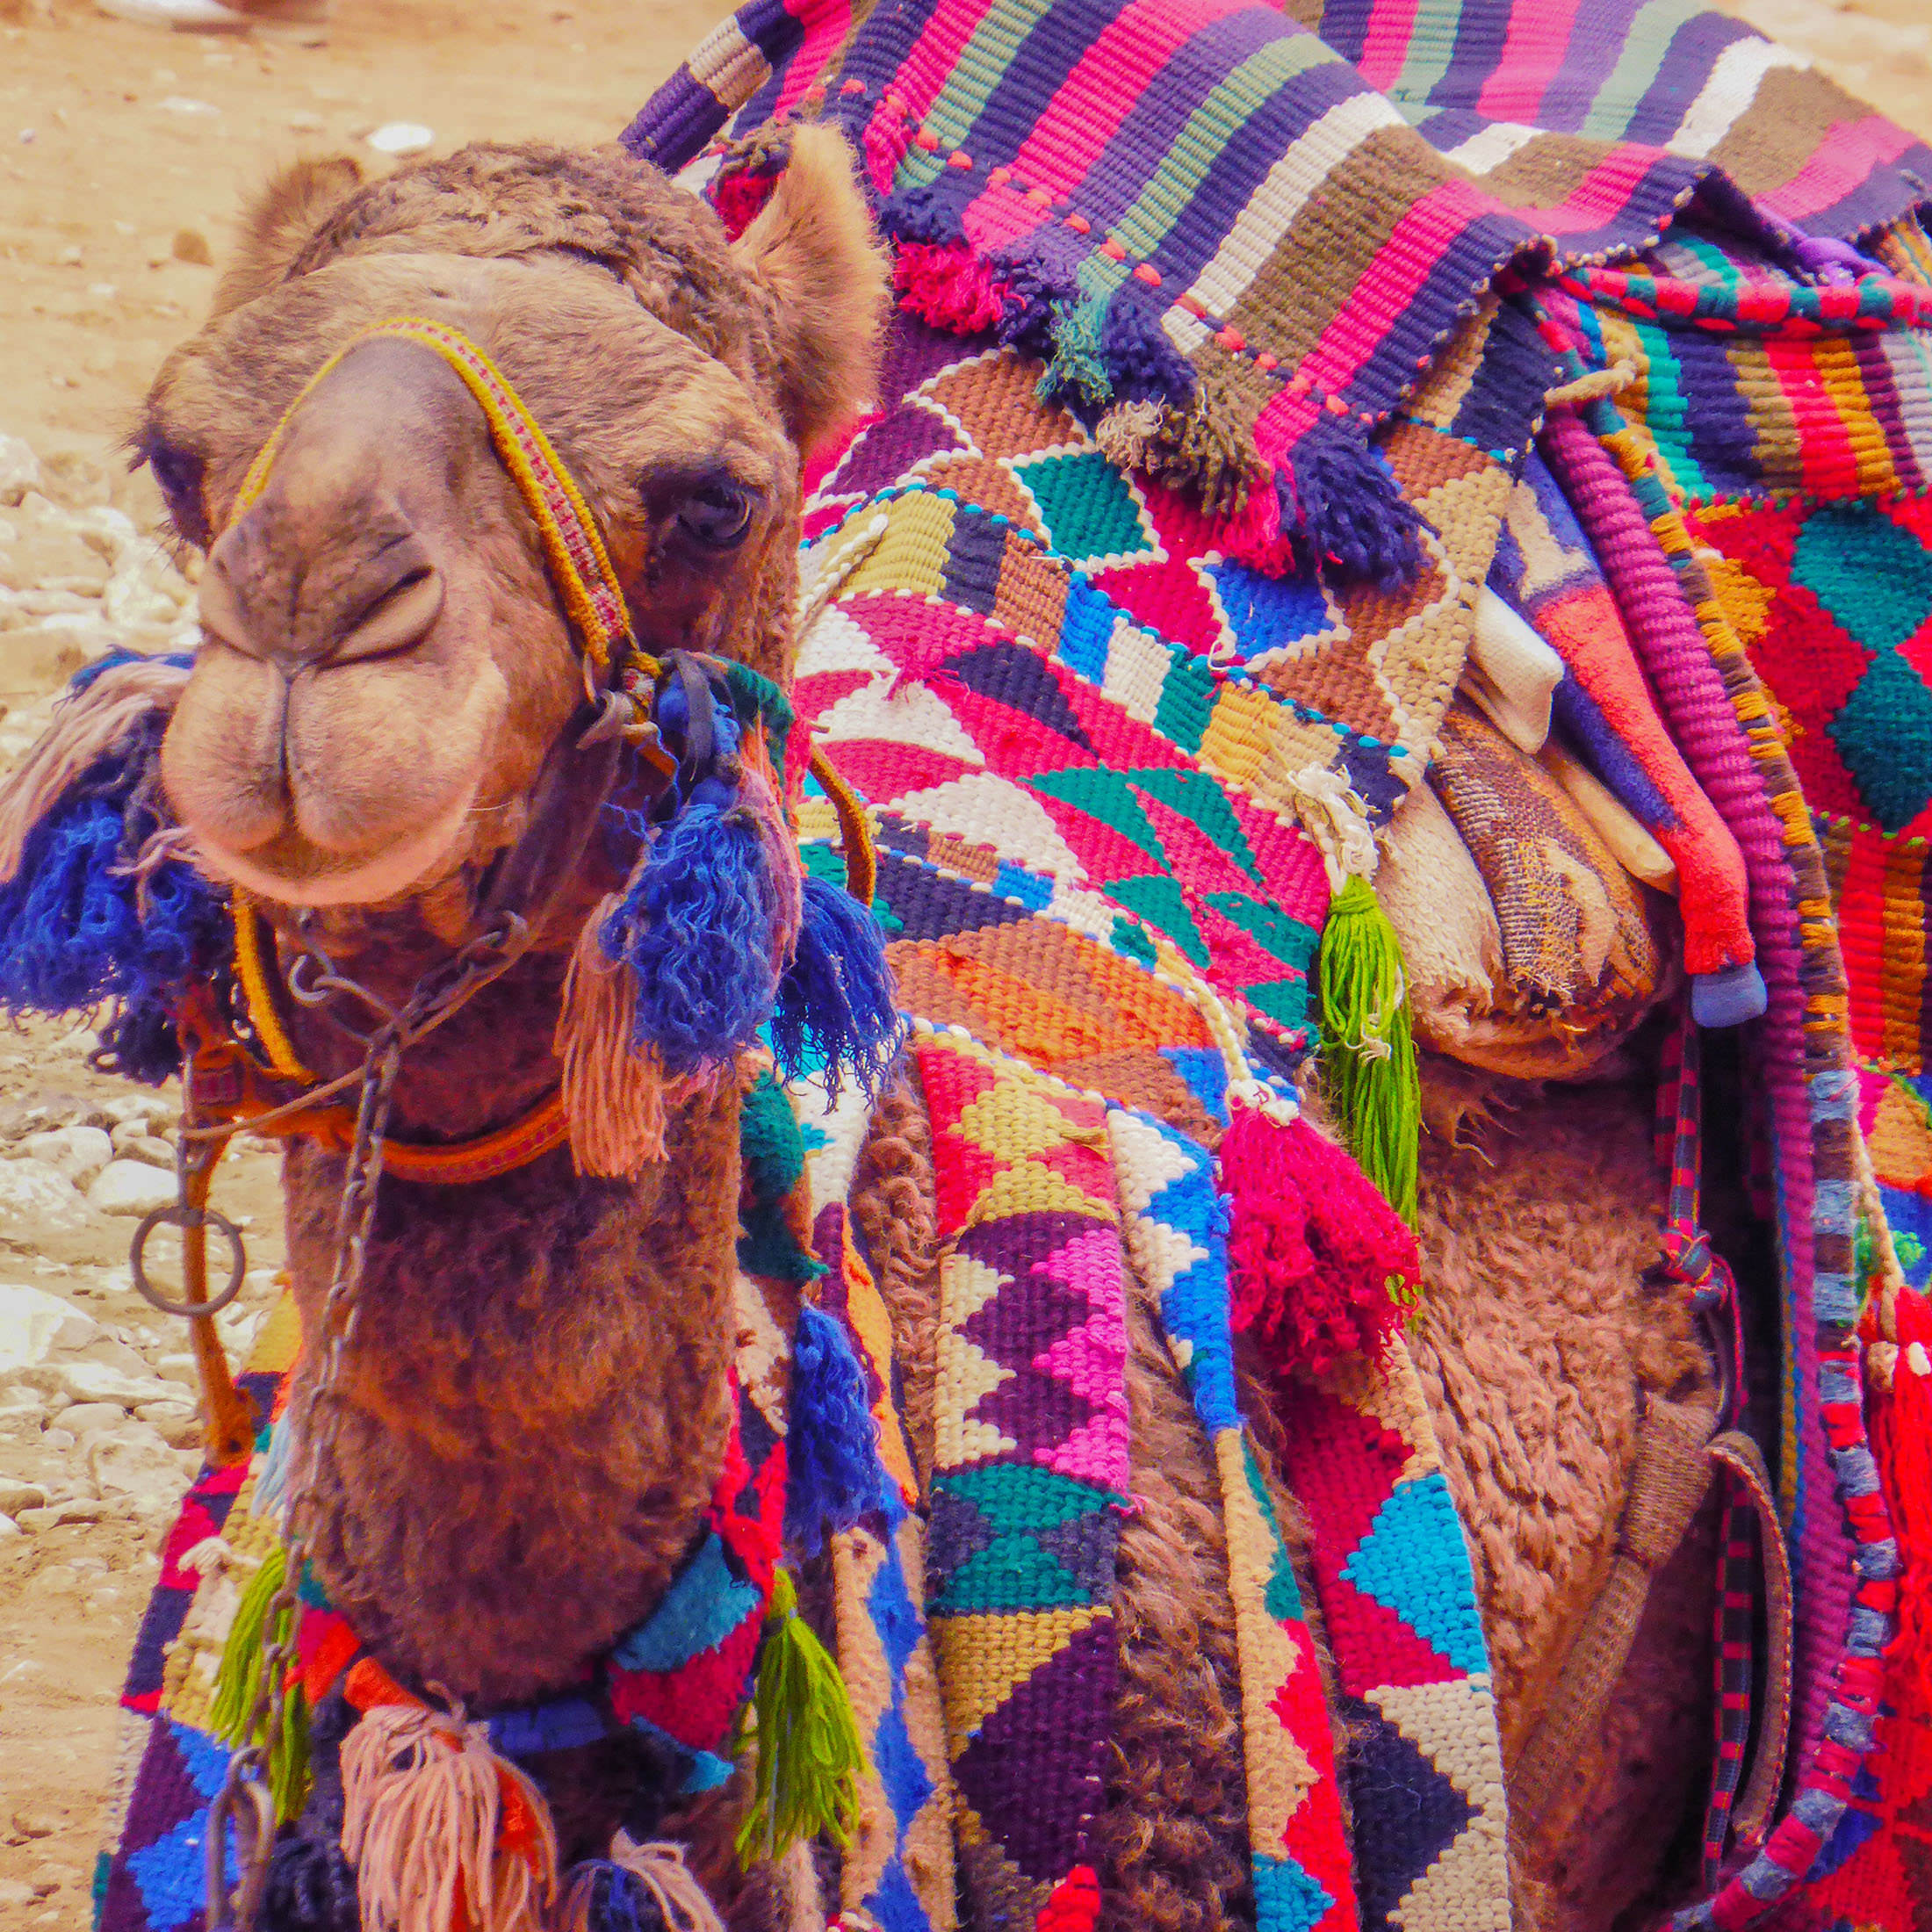 Camel in Petra Jordan